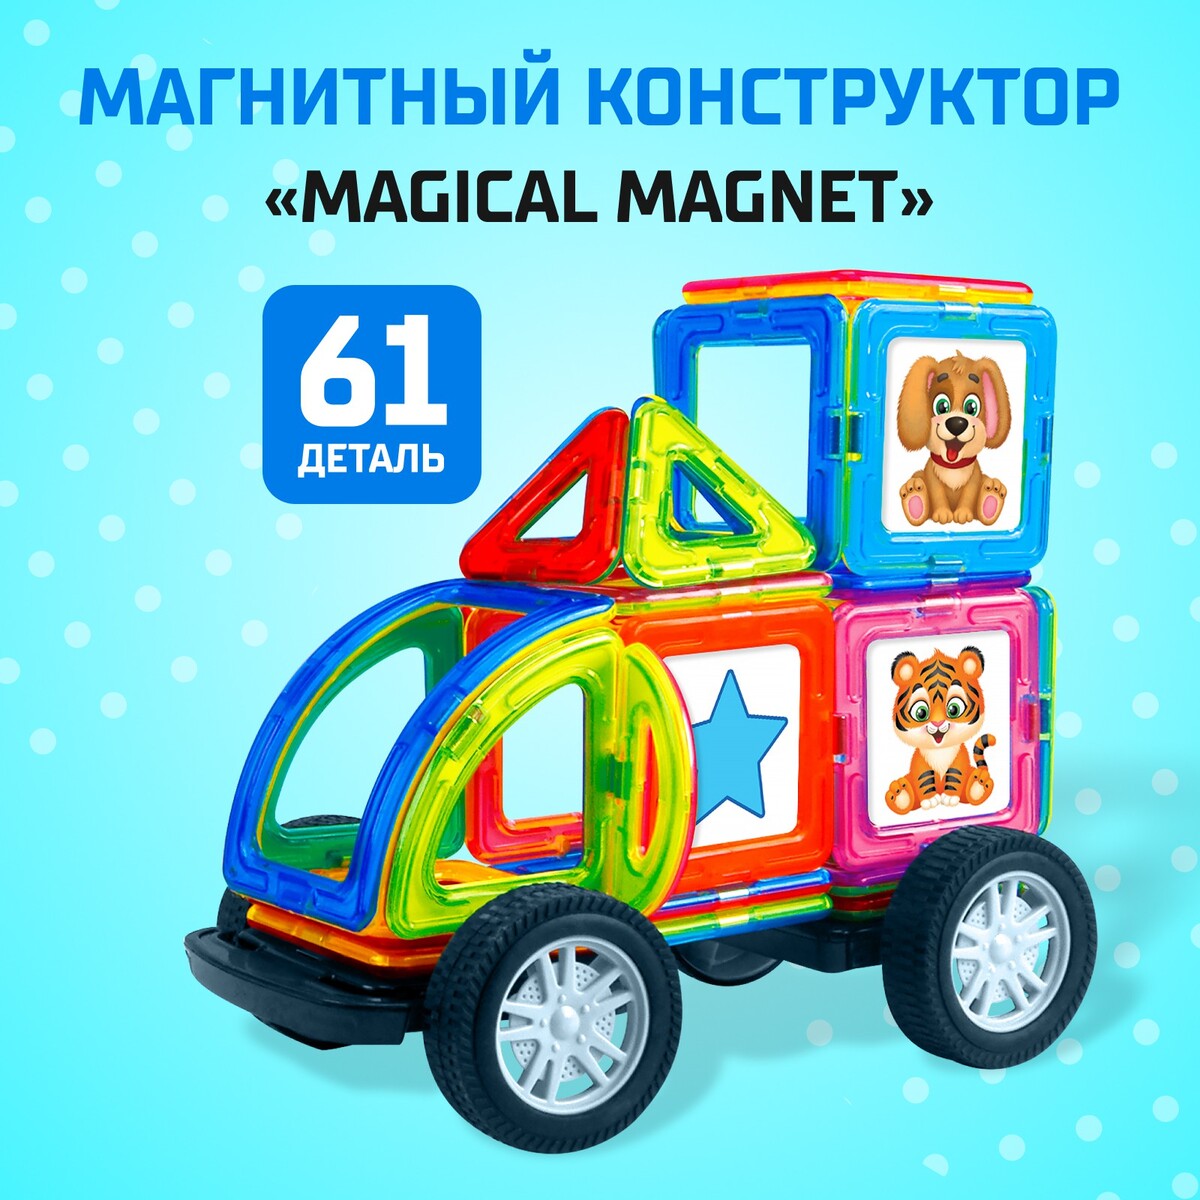 Магнитный конструктор magical magnet, 61 деталь, детали матовые конструктор теропром мини качели 33 детали 1552111